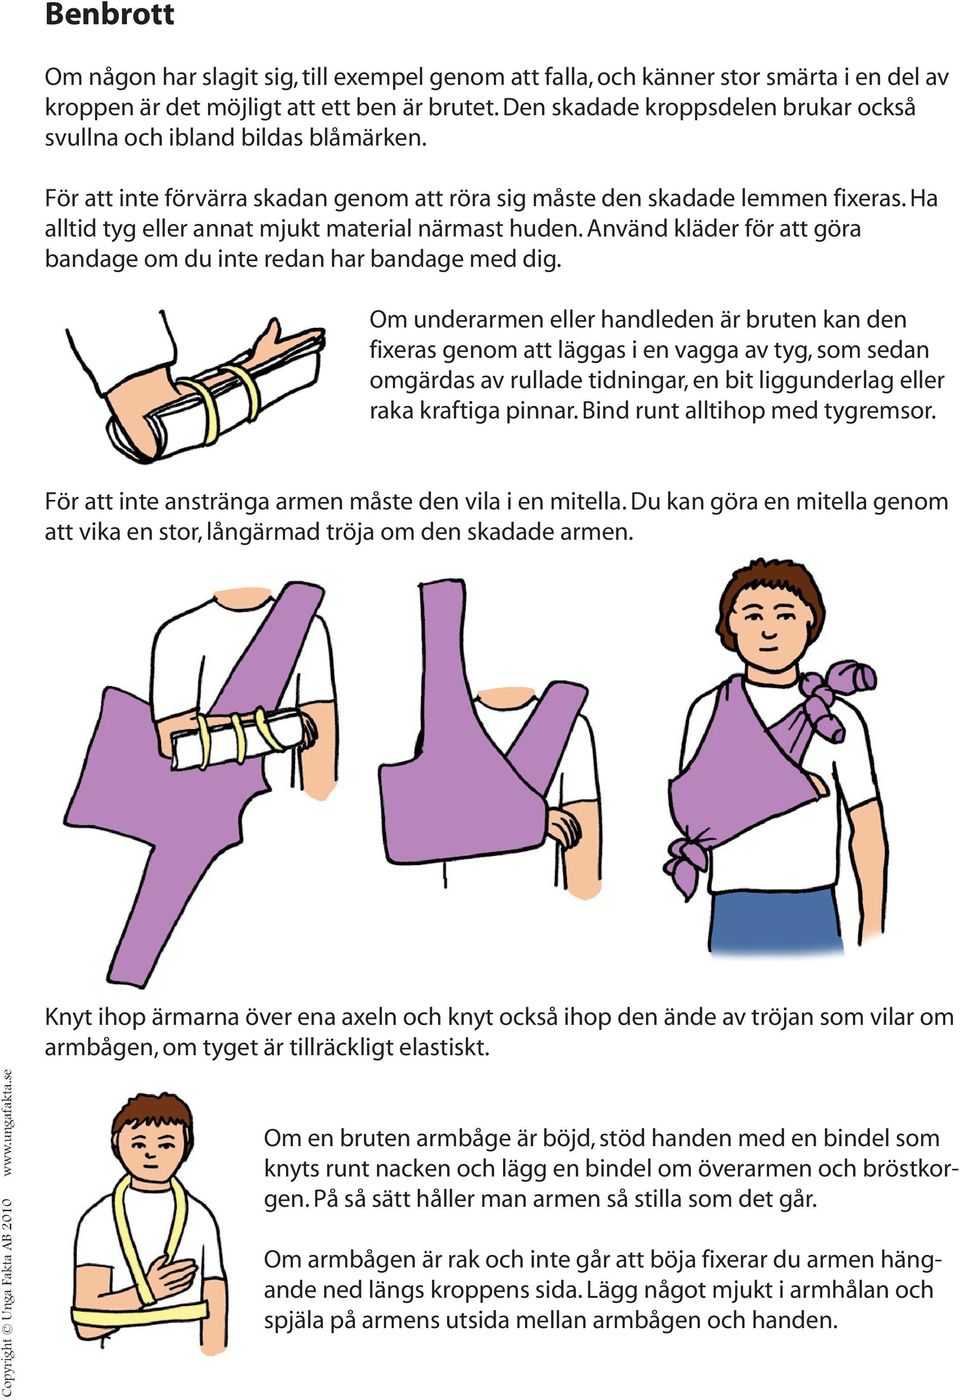 Ha alltid tyg eller annat mjukt material närmast huden. Använd kläder för att göra bandage om du inte redan har bandage med dig.